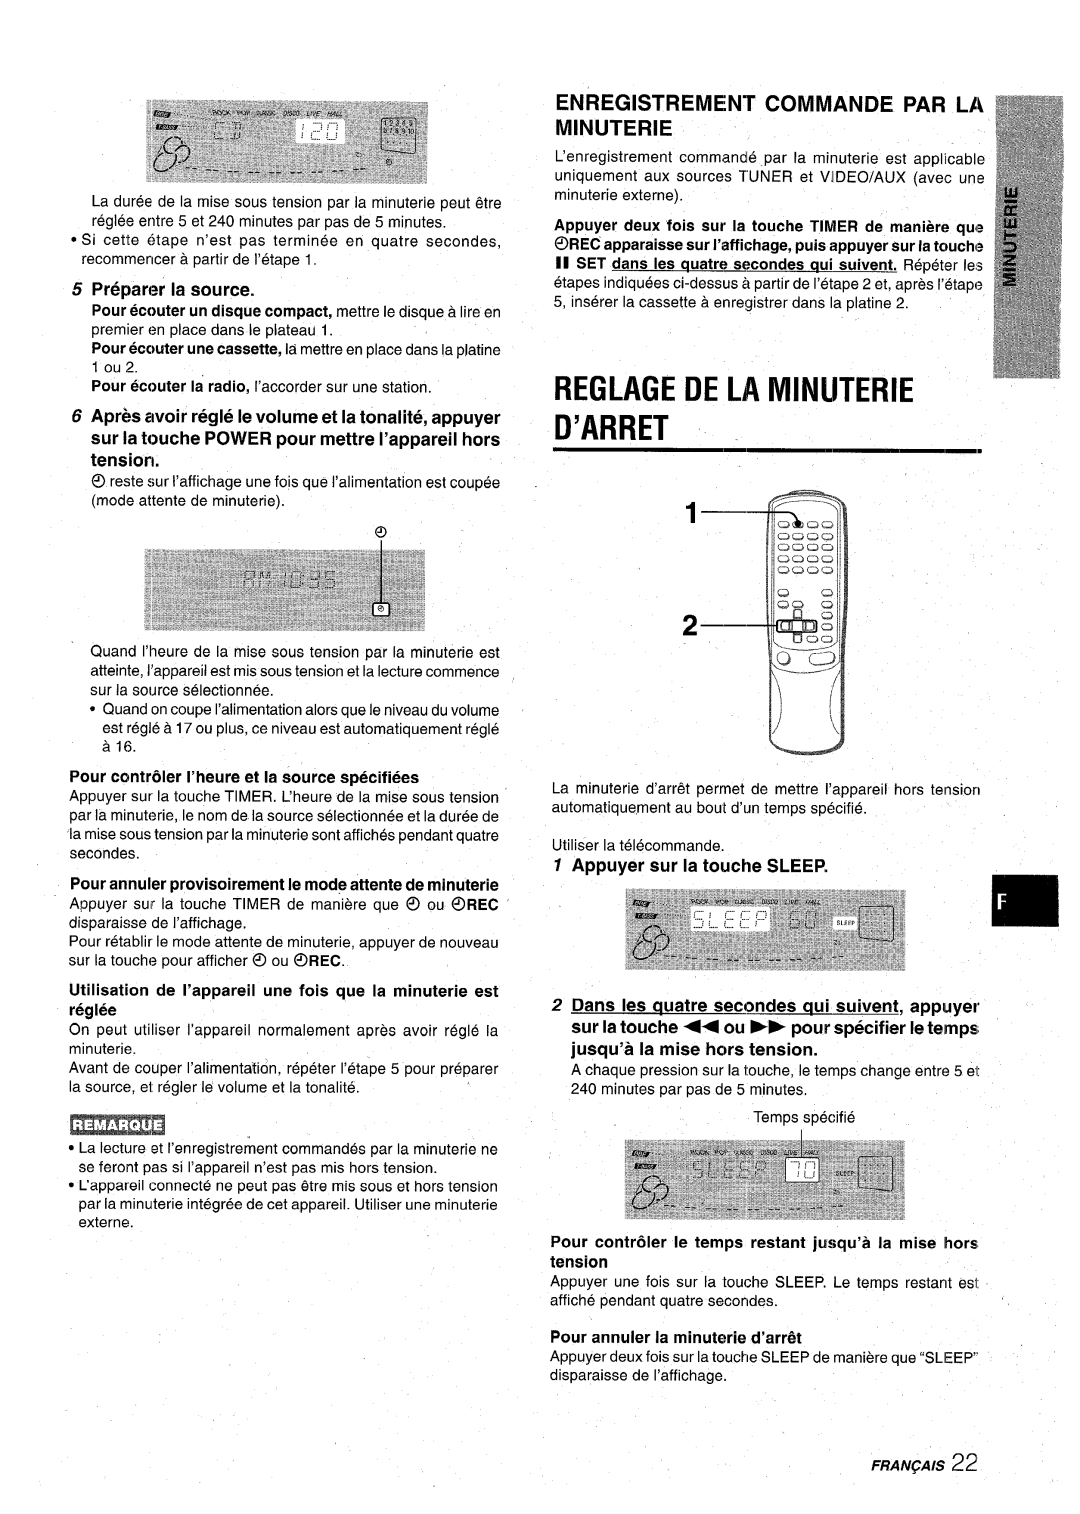 Aiwa CX-NA71 Reglage De La Minuterie D’Arret, Enregistrement Commande Par La Minuterie, Preparer la source, Fraiv~Ais 